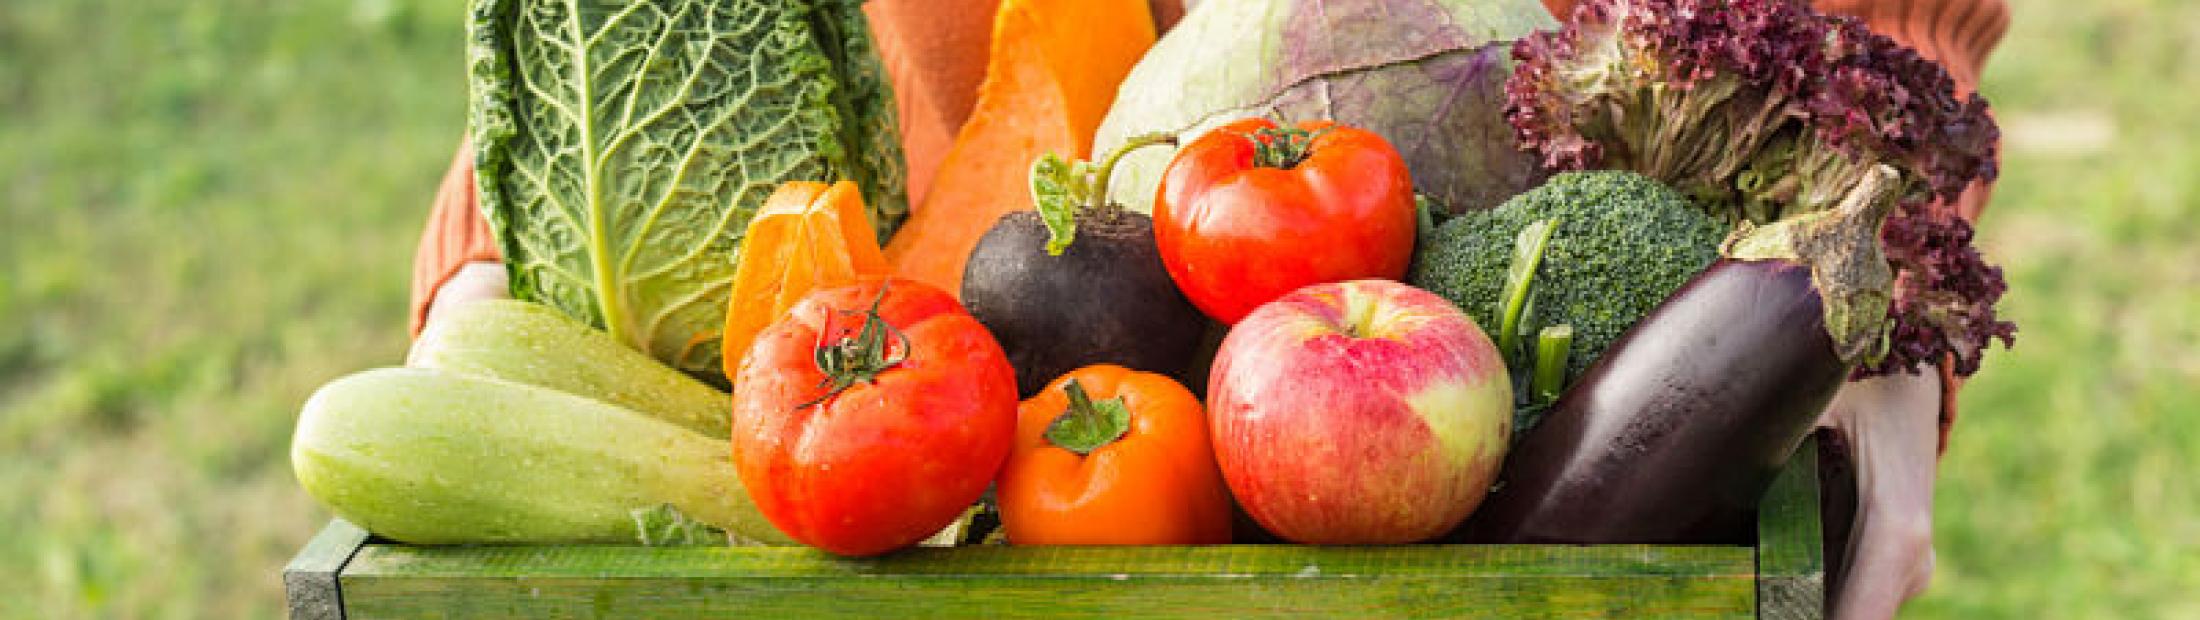 6 ventajas de la alimentación ecológica